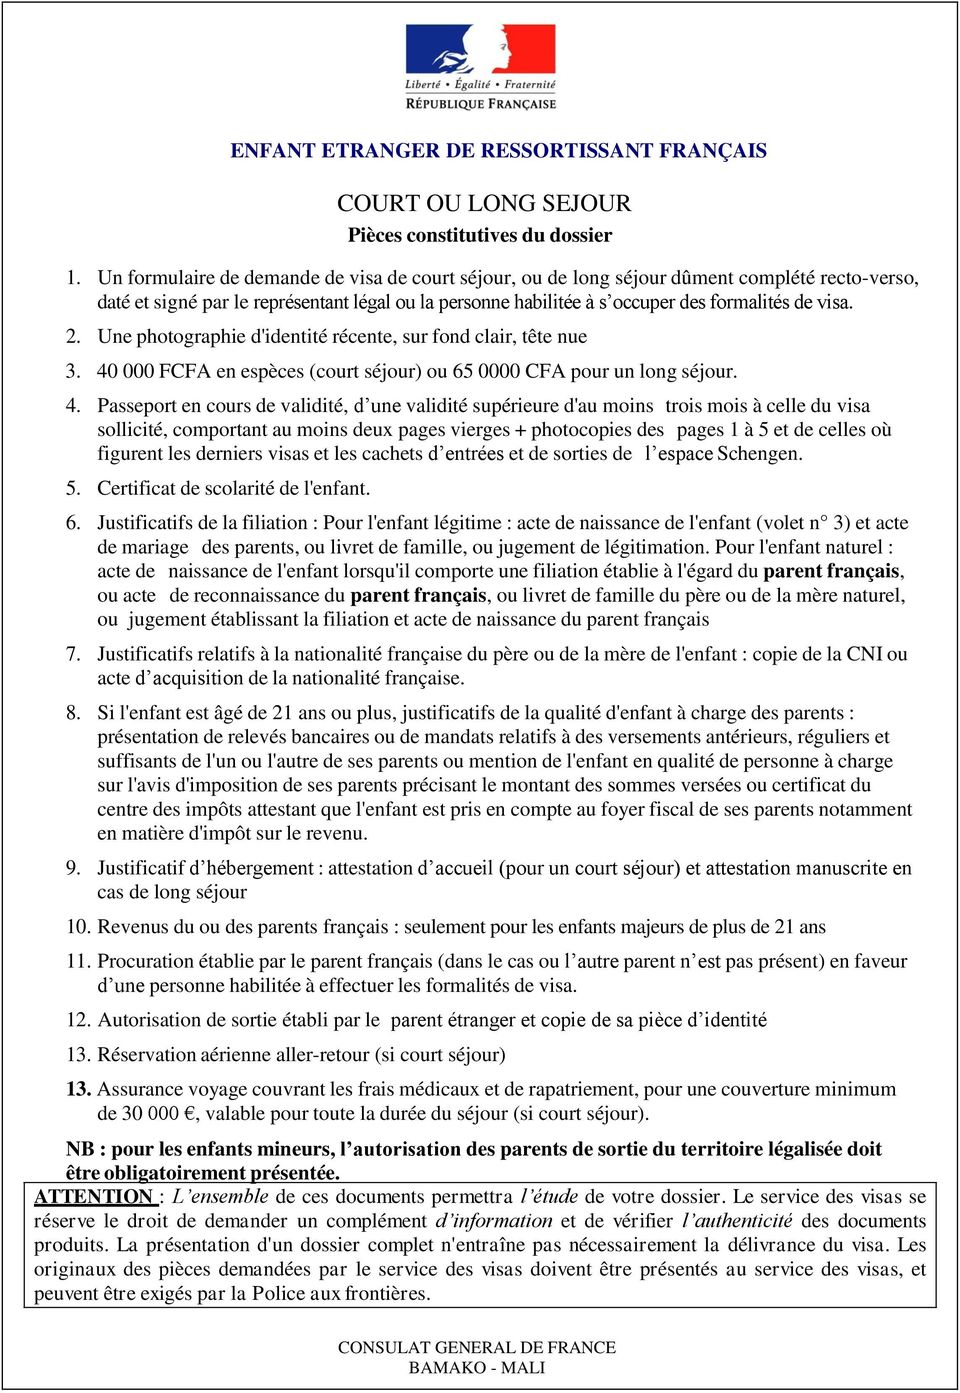 CONSTITUTION DES DOSSIERS DE DEMANDE DE VISA - PDF Téléchargement Gratuit